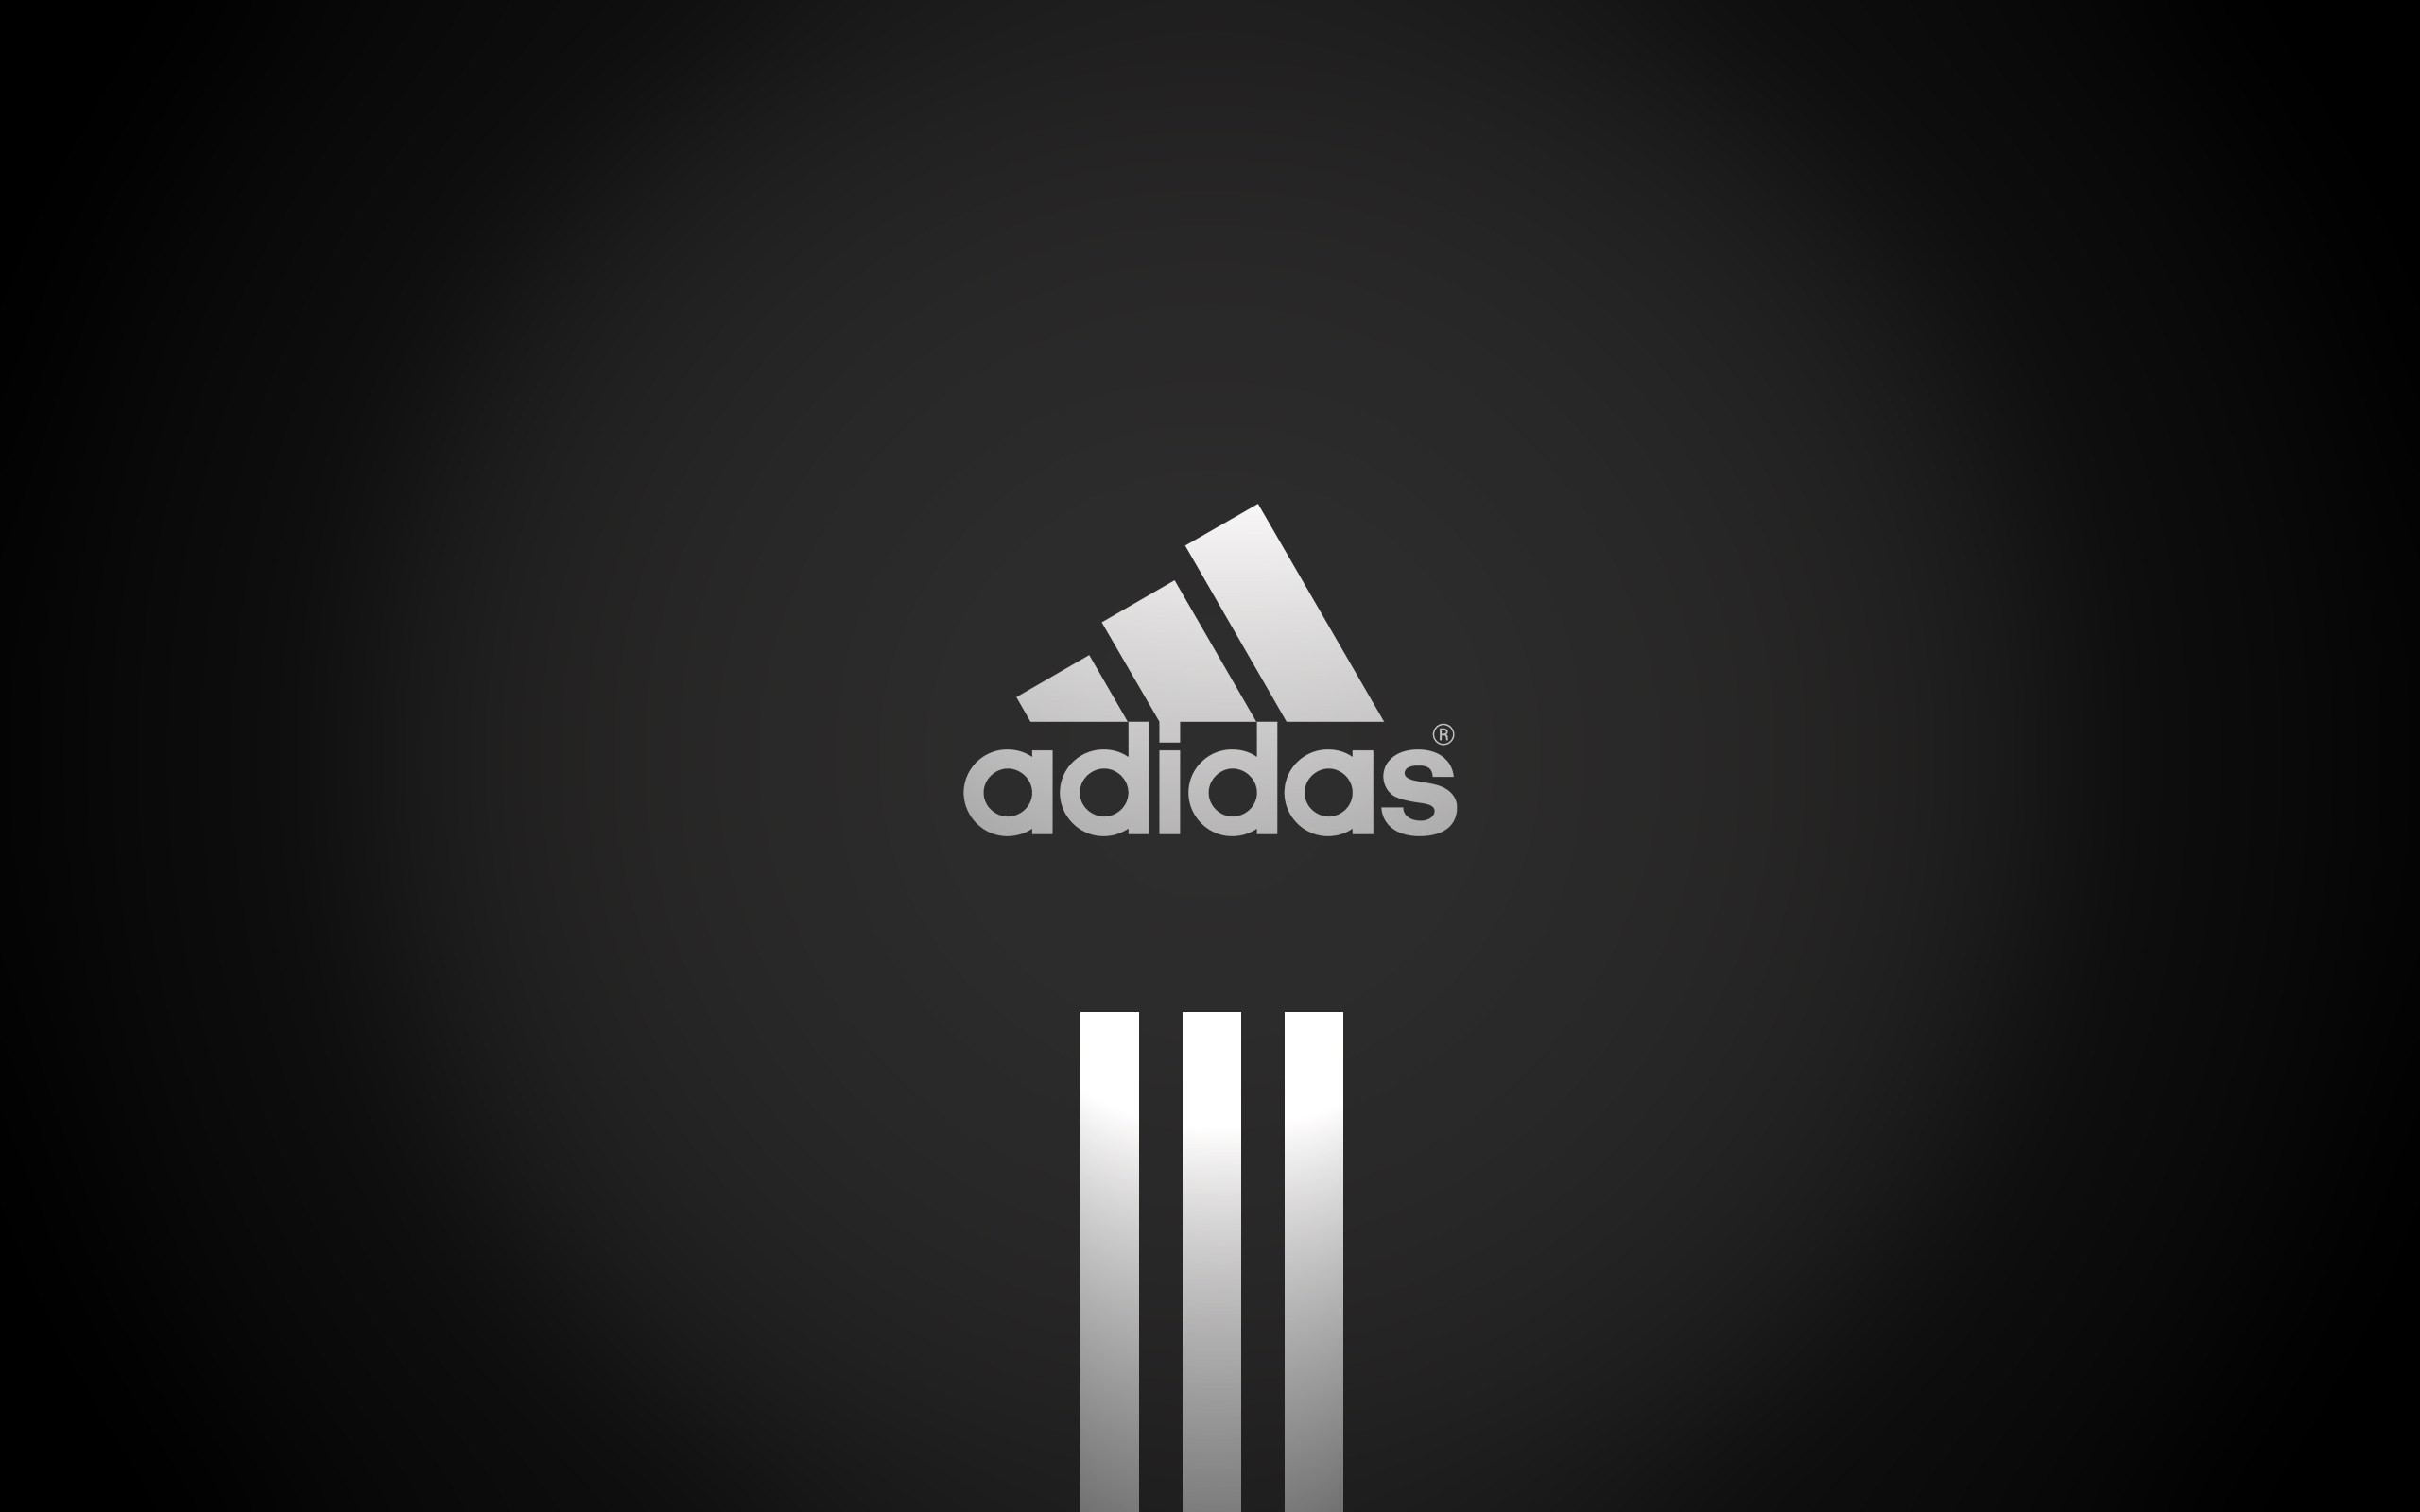 2560x1600  Adidas Logo Wallpaper 2018 71 Images  New Hd Adidas Logo Wallpaper  Inter Milan Wallpaper